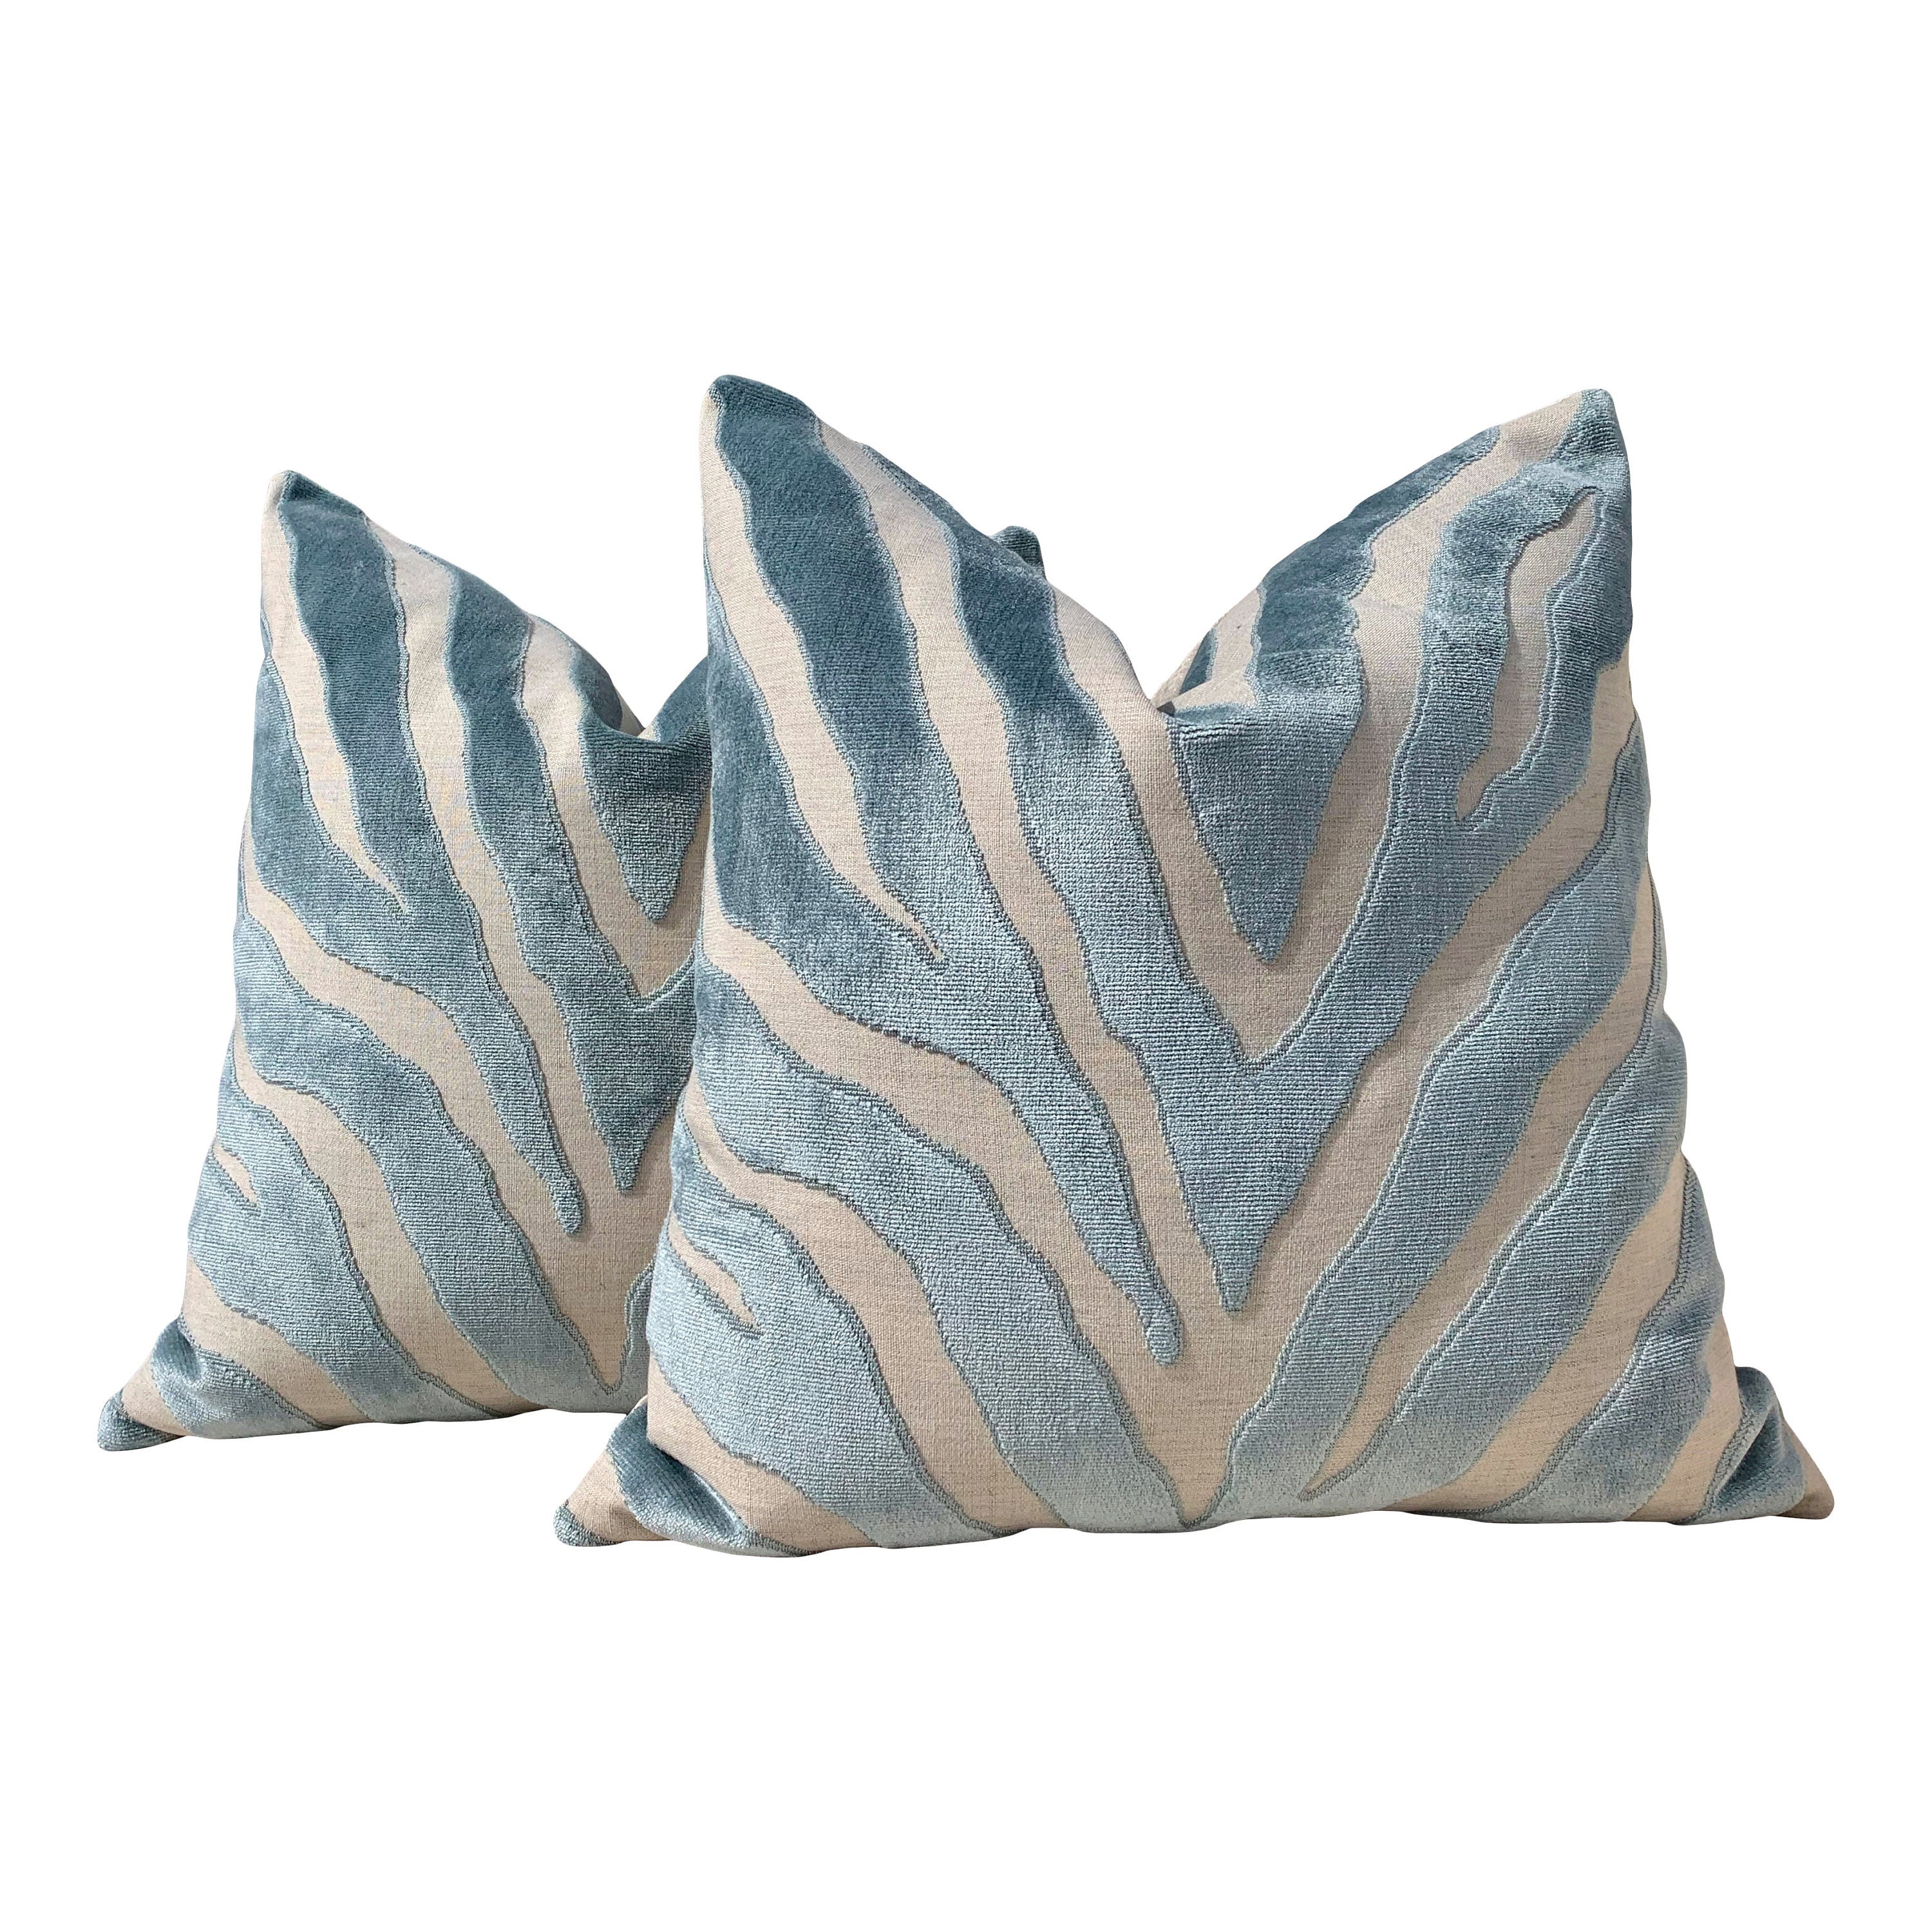 Etosha Velvet Pillow cover in Mineral. Designer Velvet Pillow // Lumbar Velvet Pillow Cover // Zebra Velvet Pillow in Spa